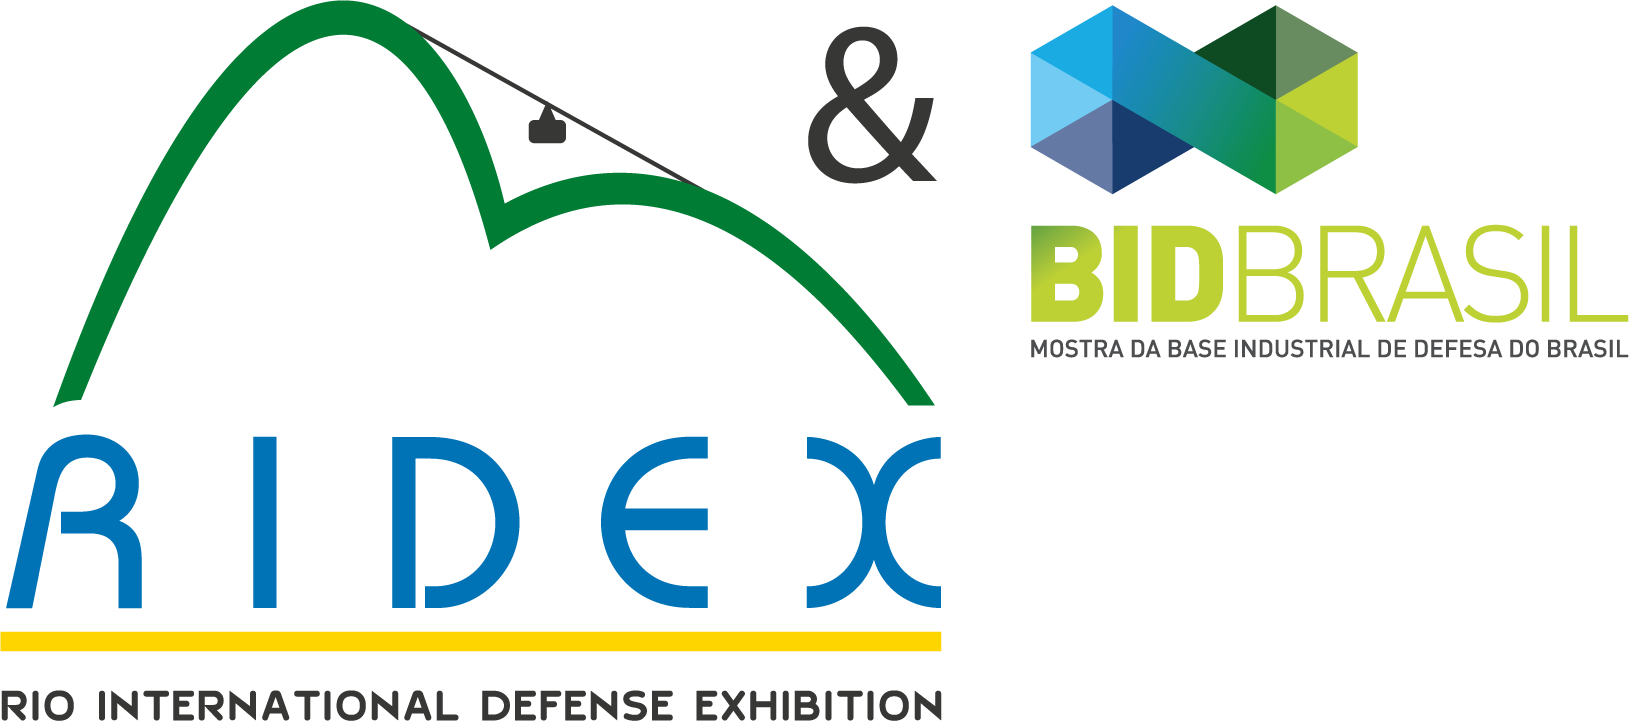 Cerca de 60 indústrias da Base Industrial de Defesa estarão na Ridex e na Mostra BID Brasil 2018